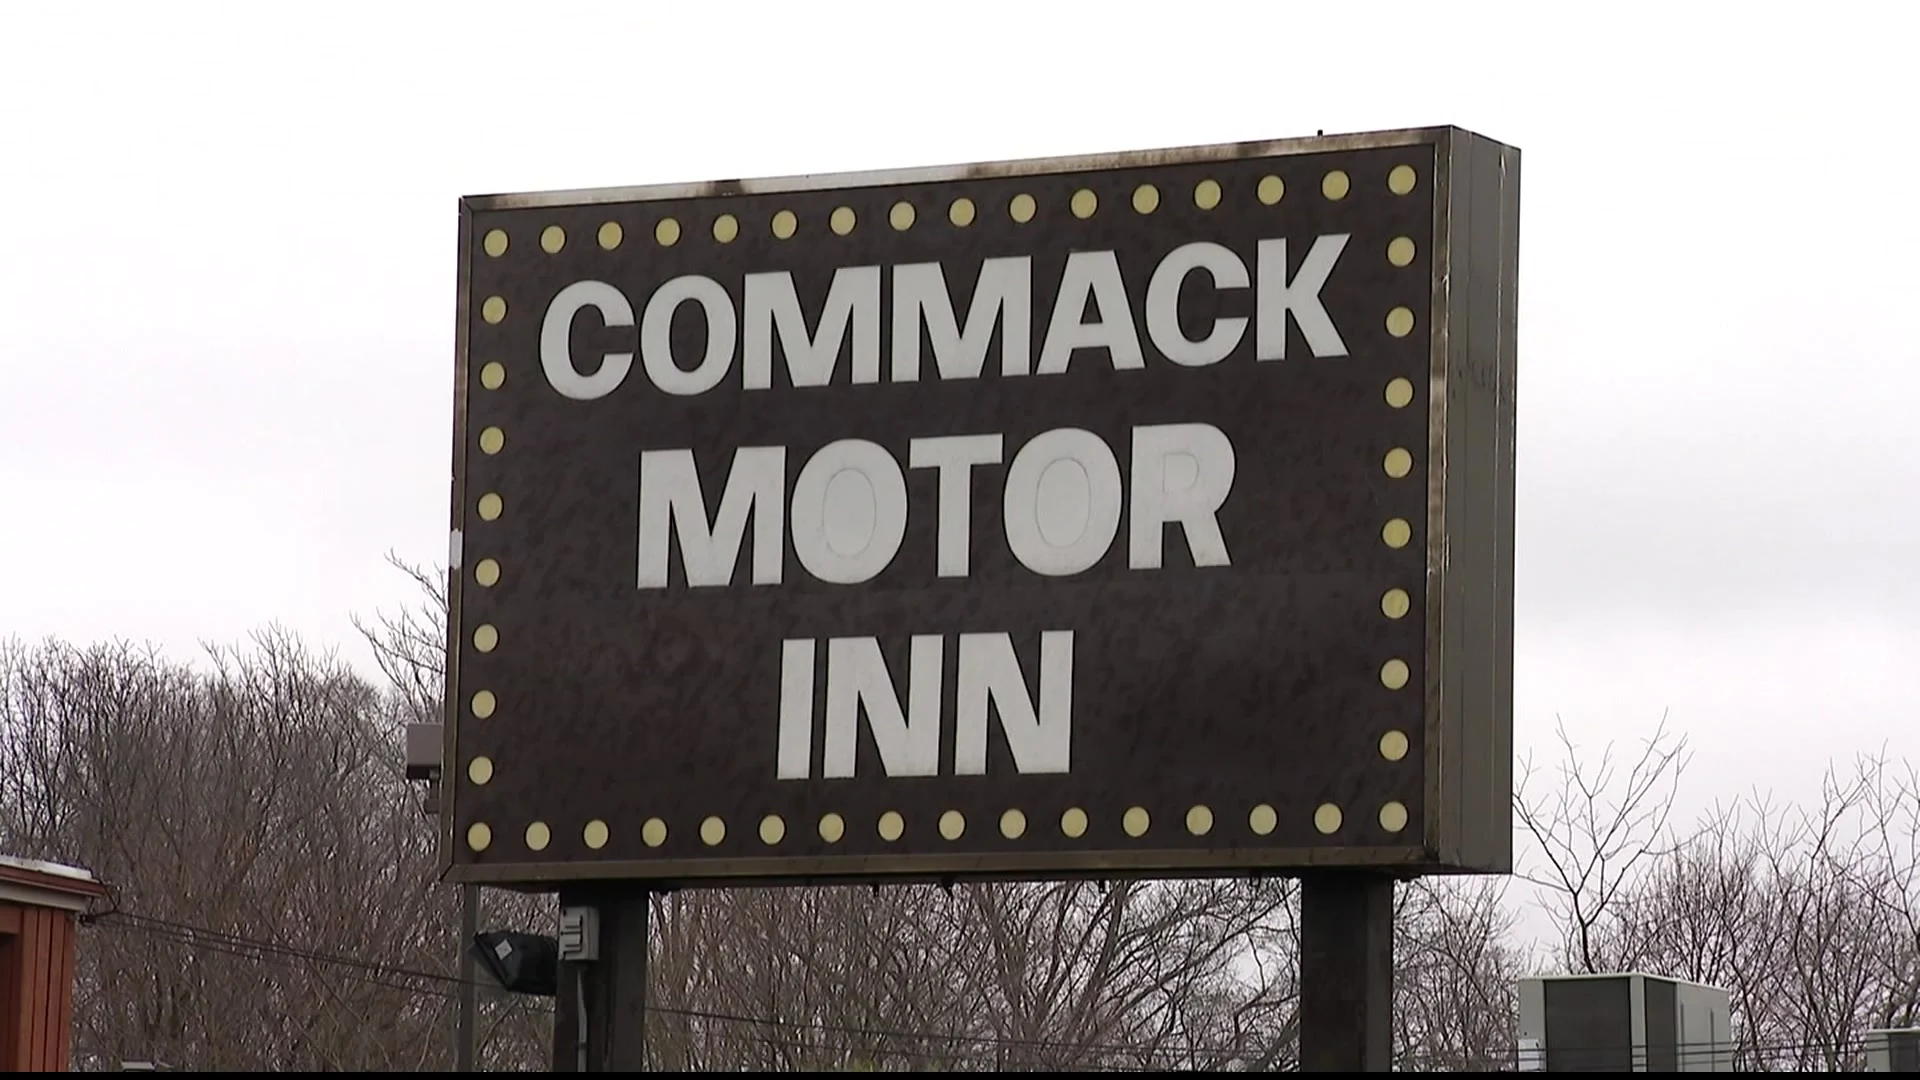 Commack Motor Inn Sold For Nearly 14 Million 0867